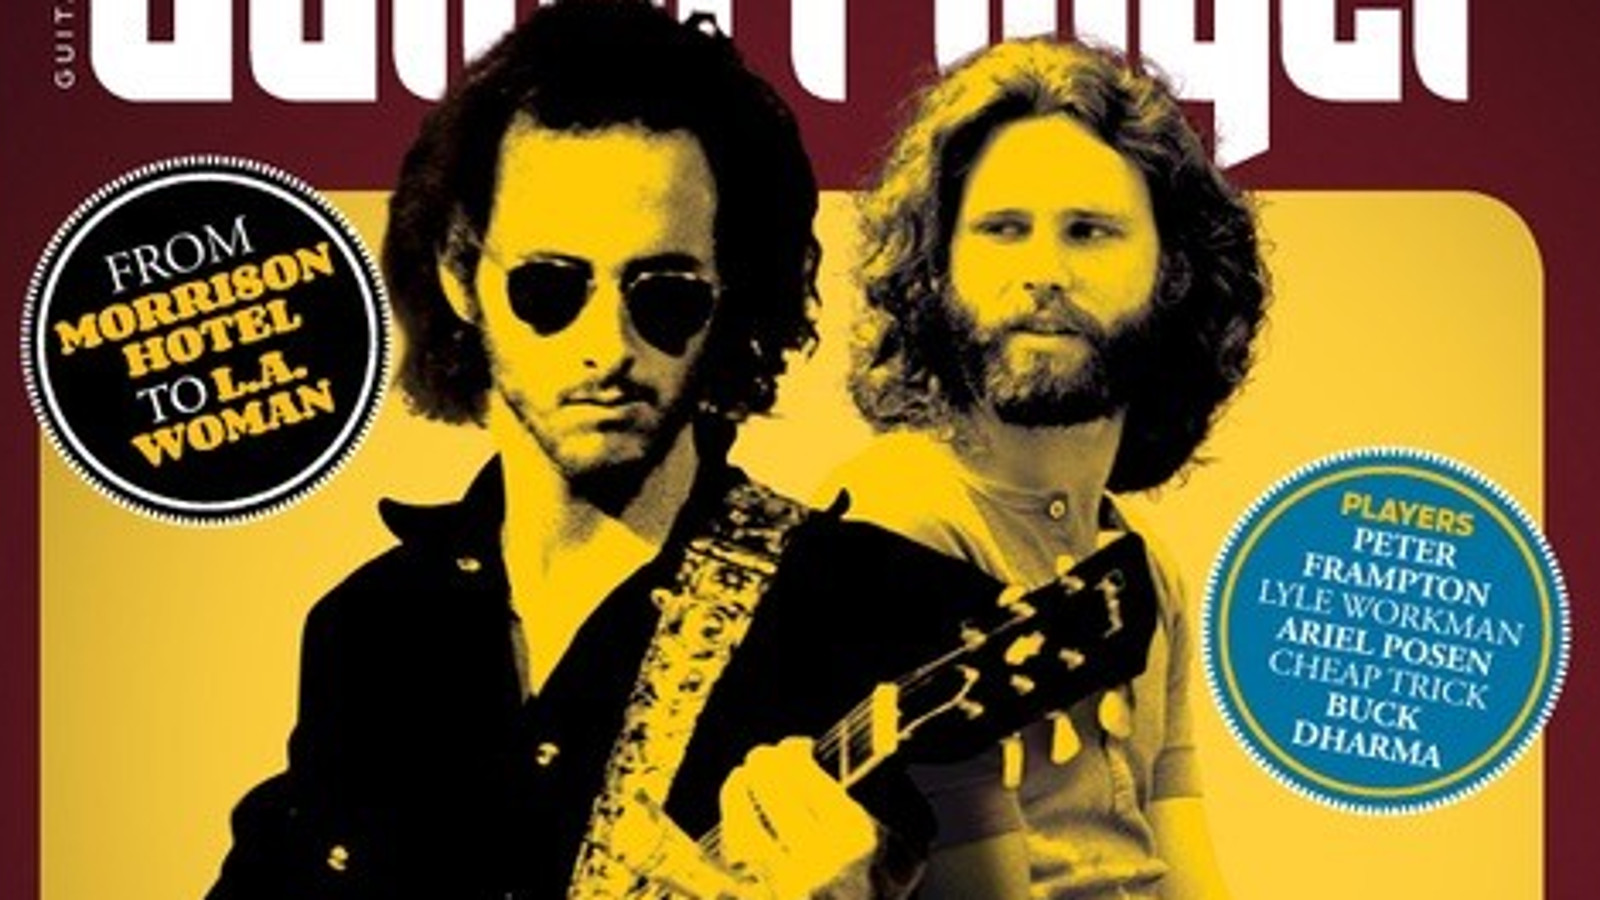 Kuvassa on kaksi kitaristia Guitar palyer -lehden kannessa. Kuvan värit ovat musta kellertävä.  